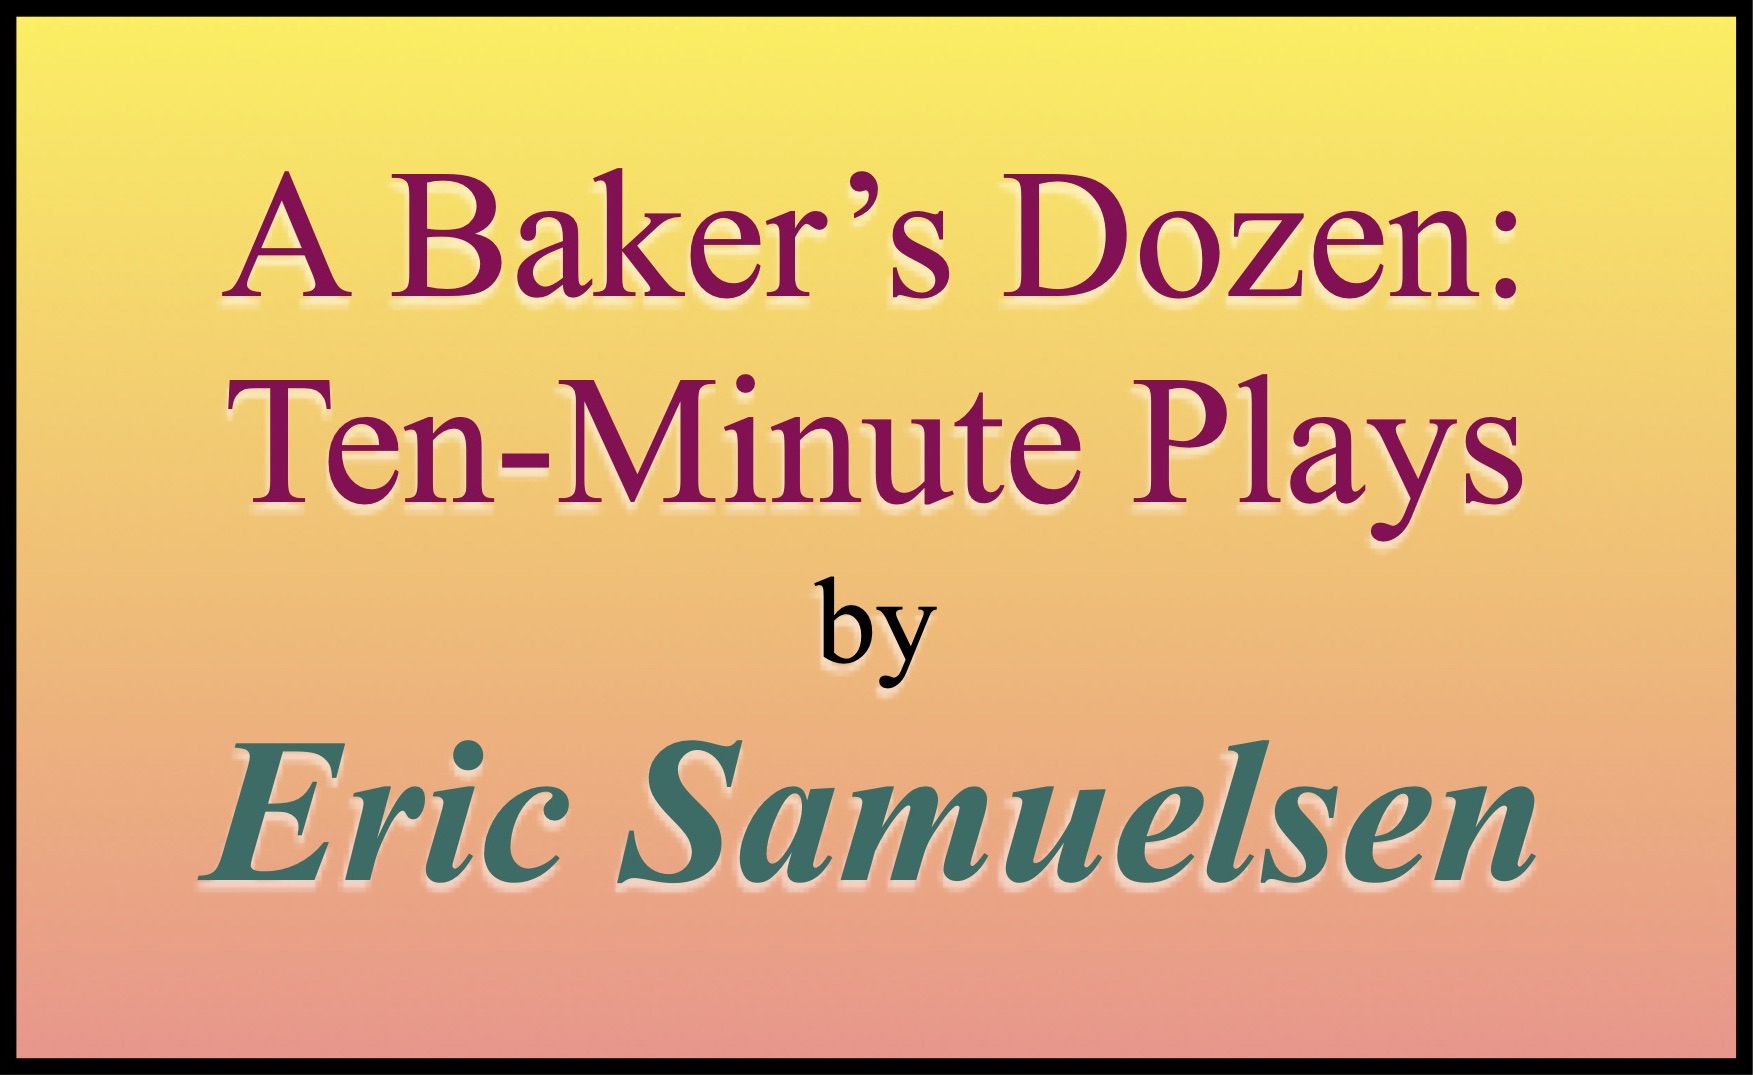 A Baker’s Dozen: Ten-Minute Plays by Eric Samuelsen